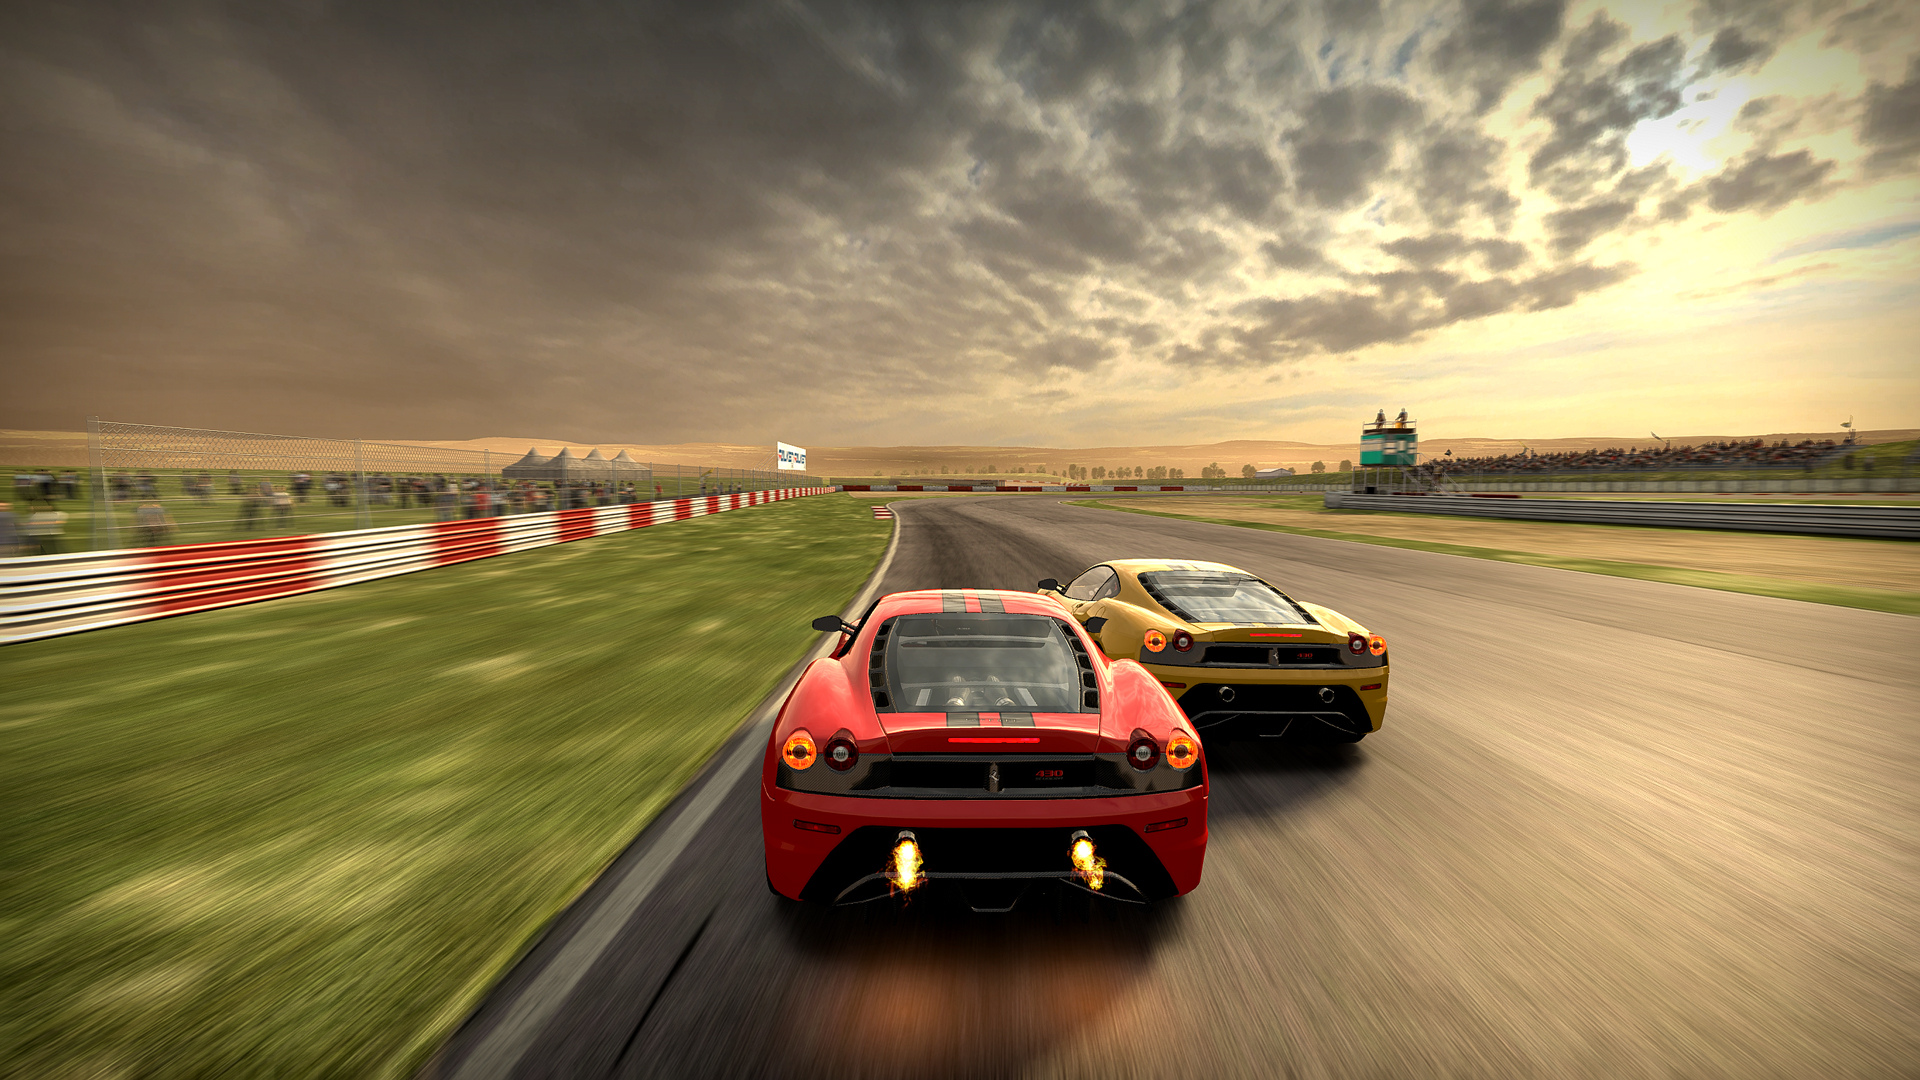 Car Play Racing Online Game - Slide 1 - Best free racing games on ...